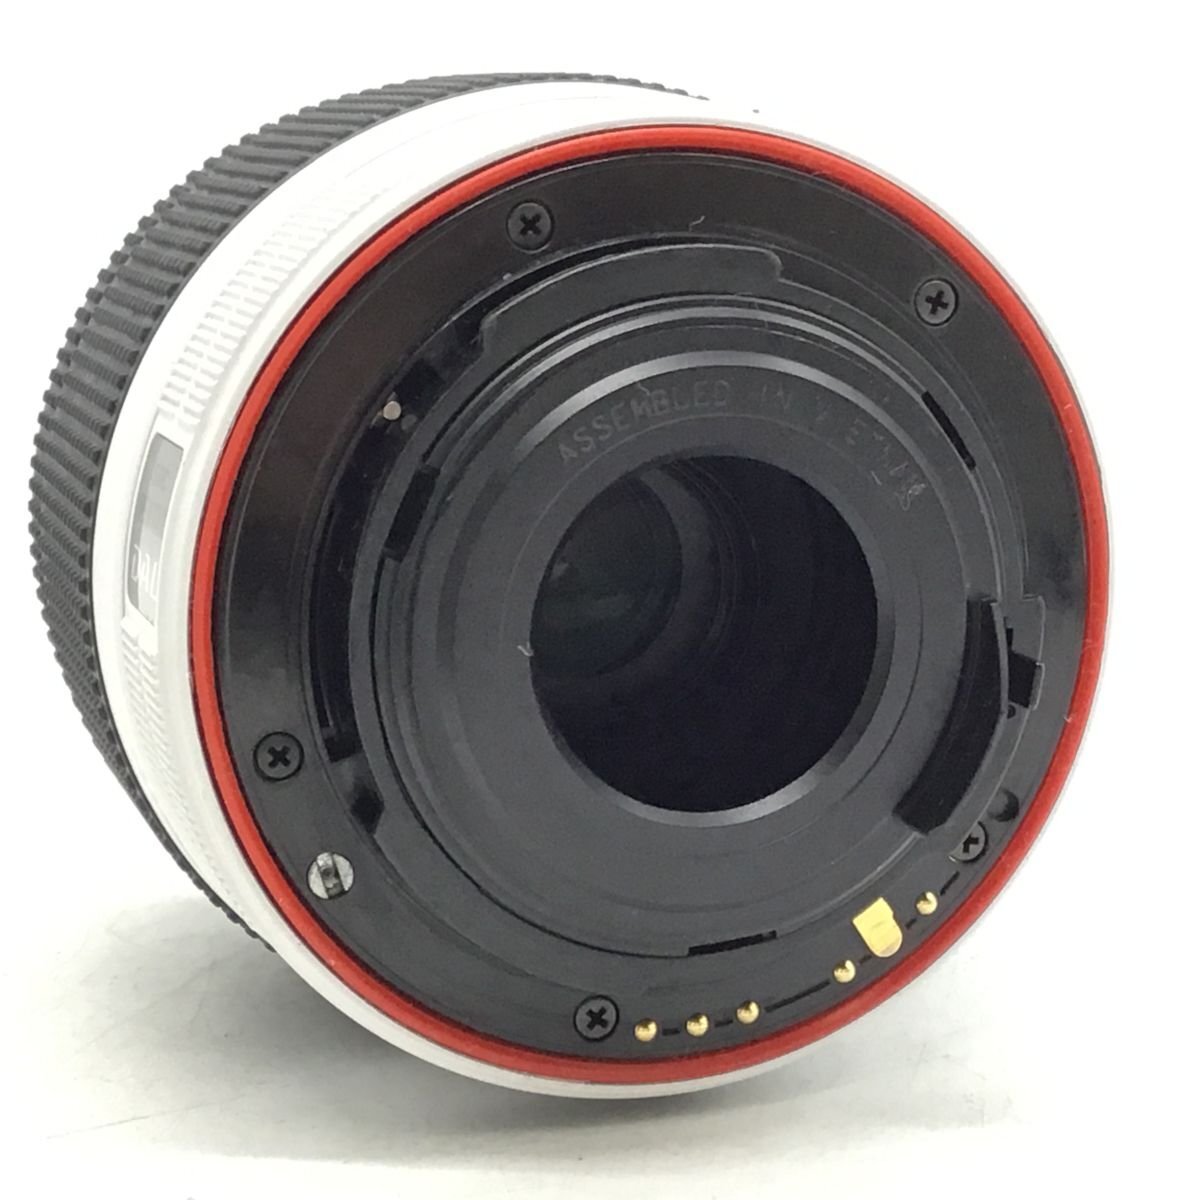 カメラ PENTAX K-50 / SMC PENTAX-DAL 18-55mm デジタル一眼レフ セット品 現状品 [1637HJ]_画像3